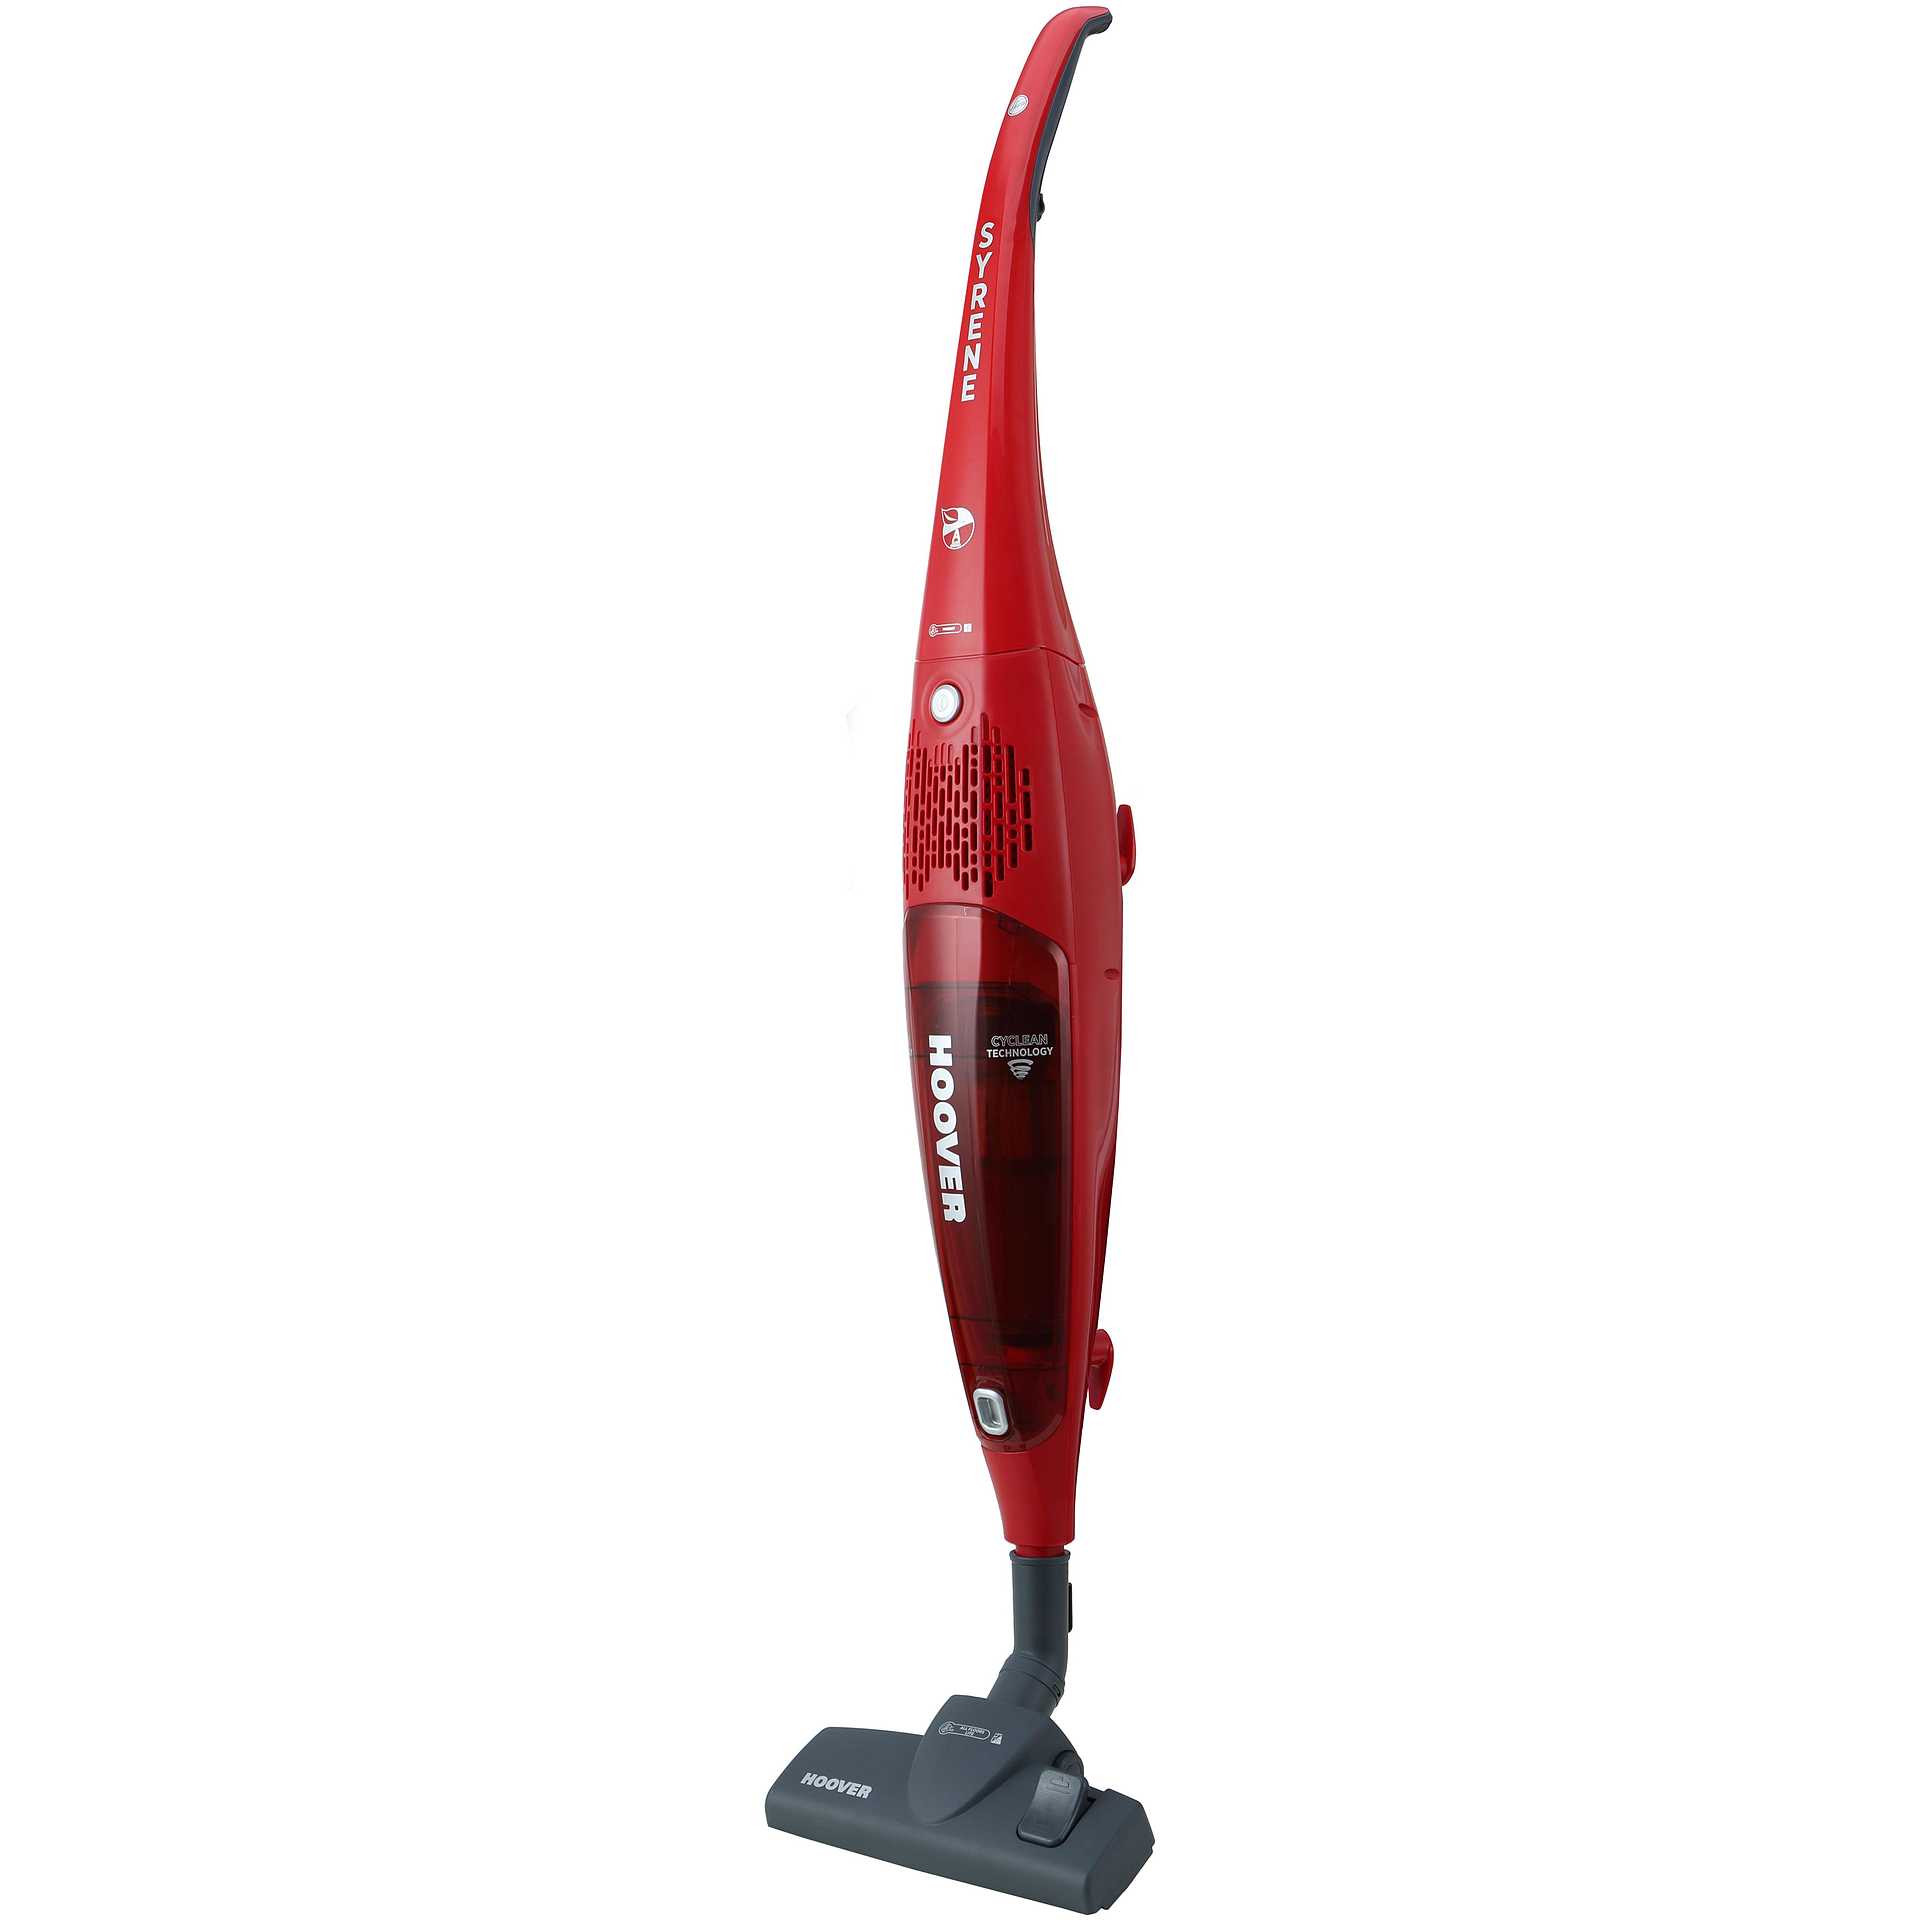 HOOVER scopa elettrica senza filo 700W colore rosso - Pulizia superfici  Scope elettriche - ClickForShop